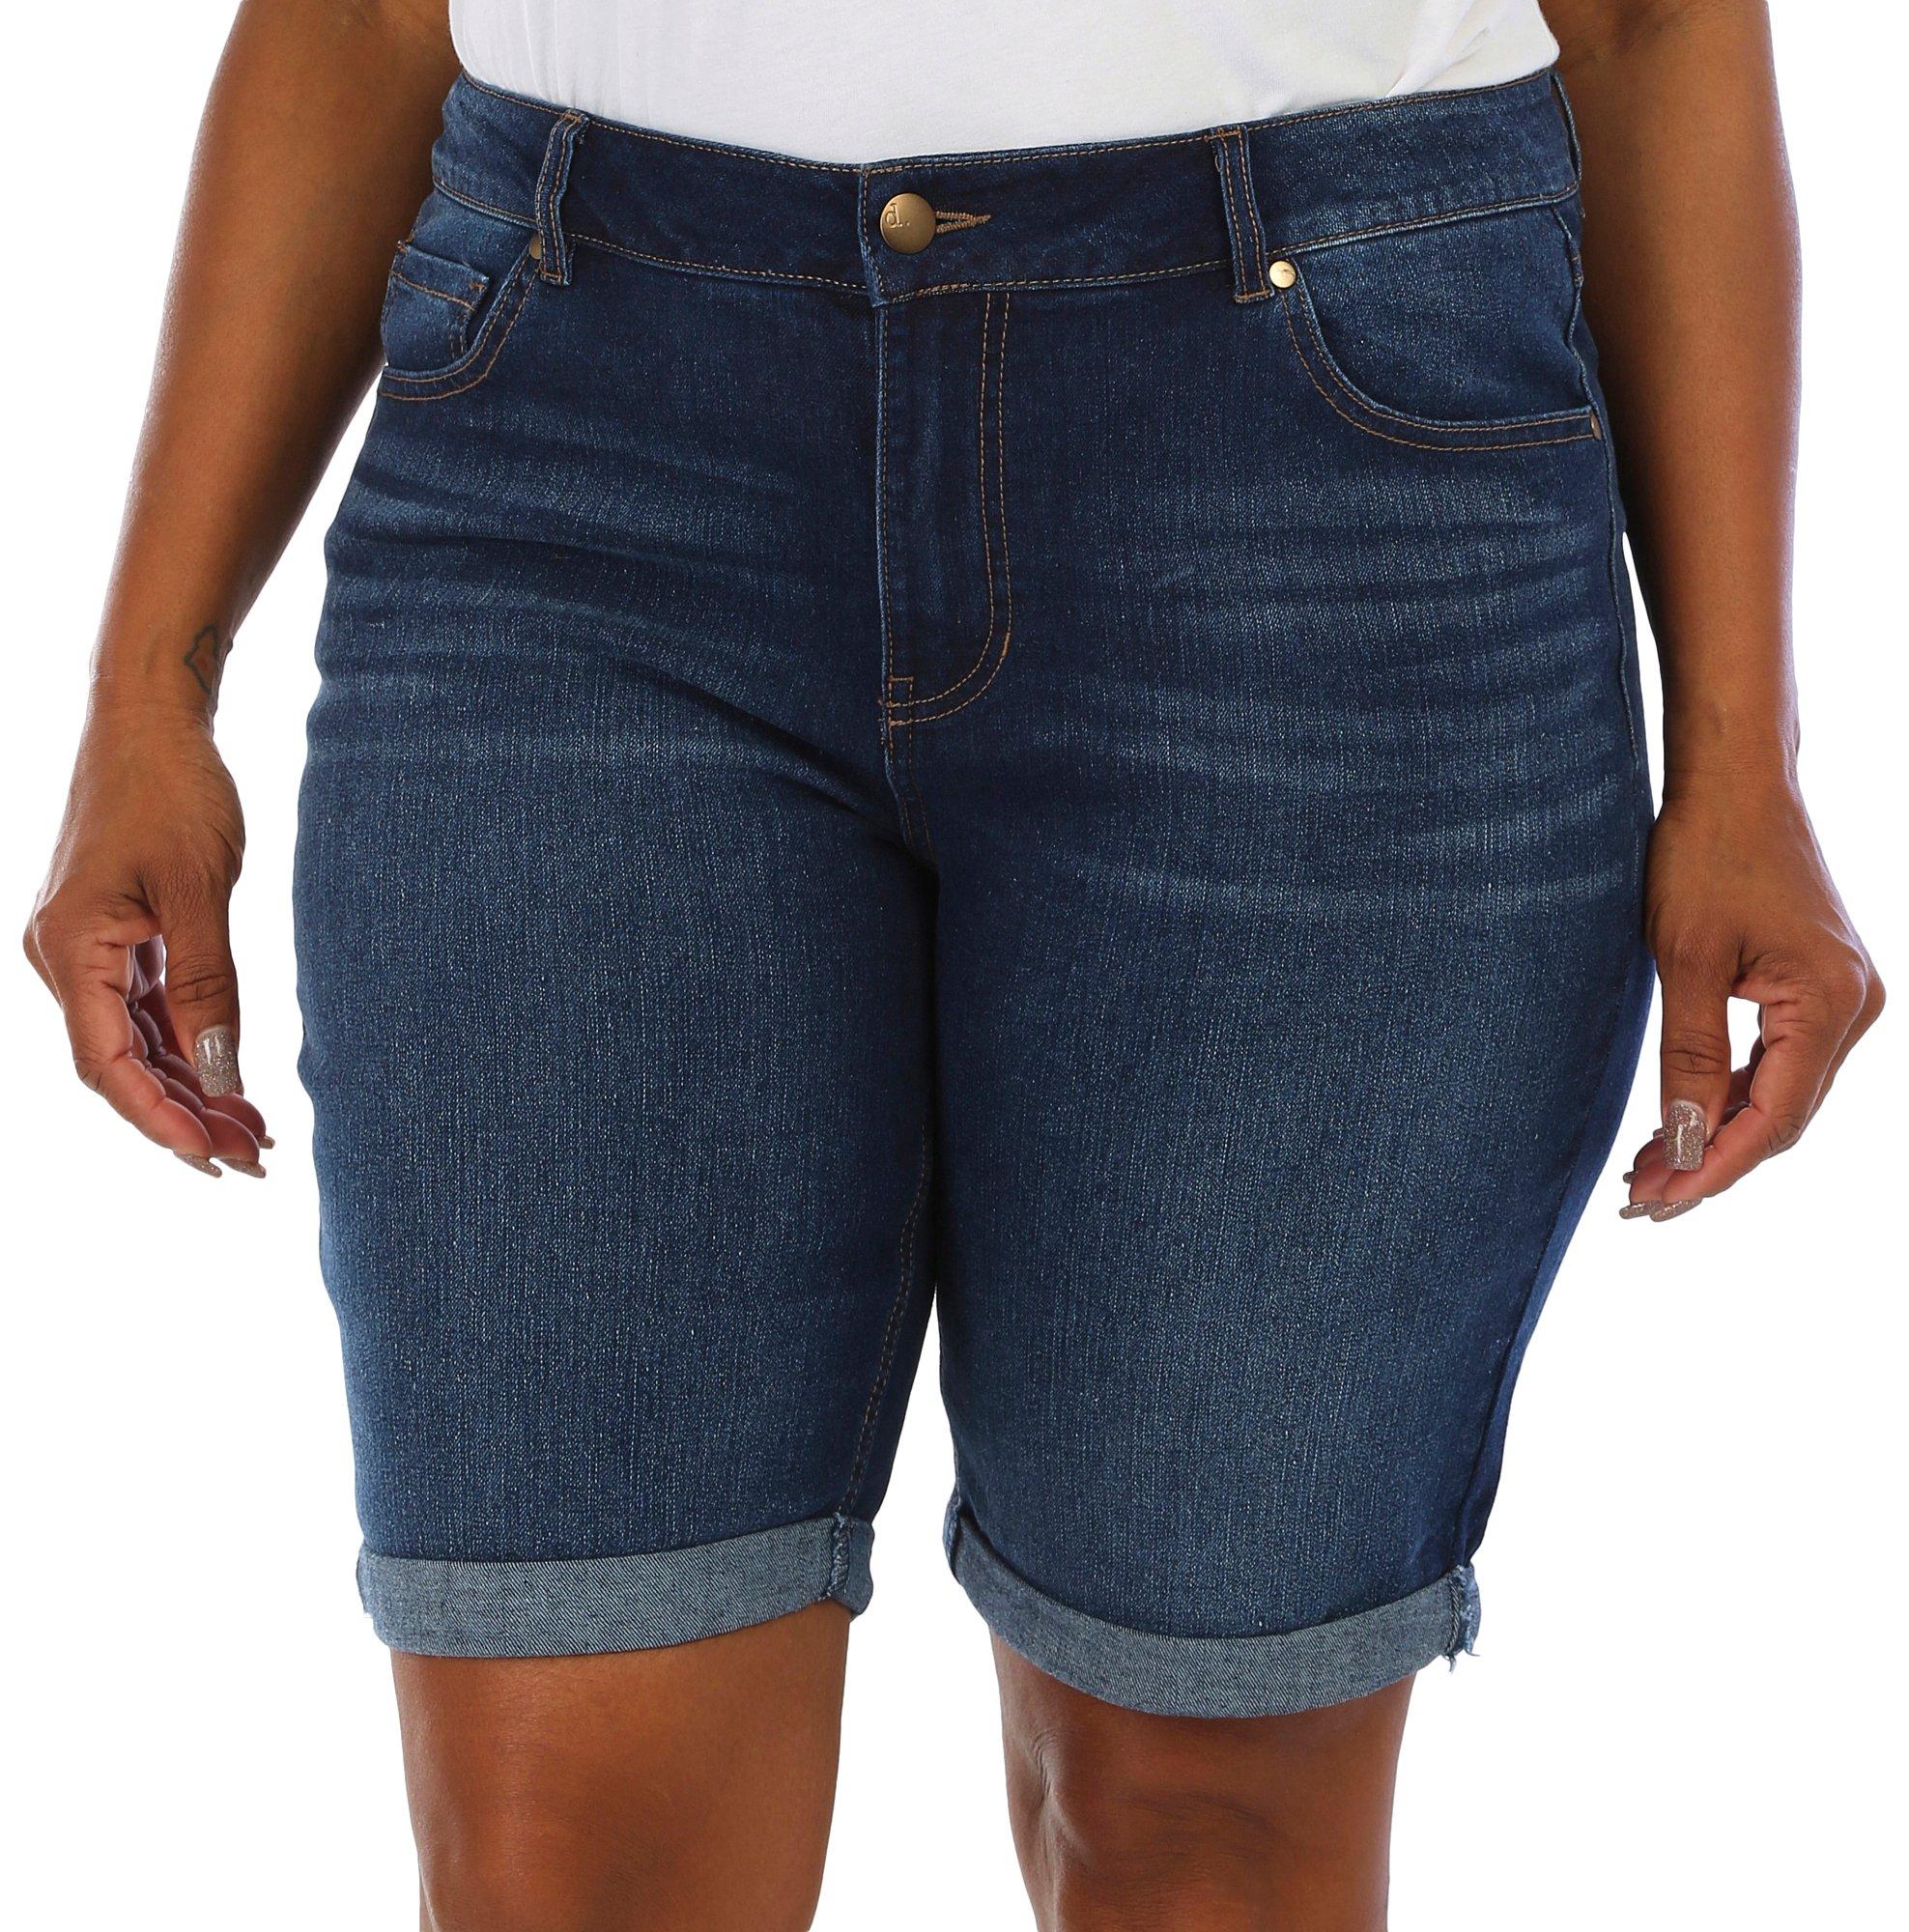 D. Jeans Plus Cuffed Bermuda Shorts